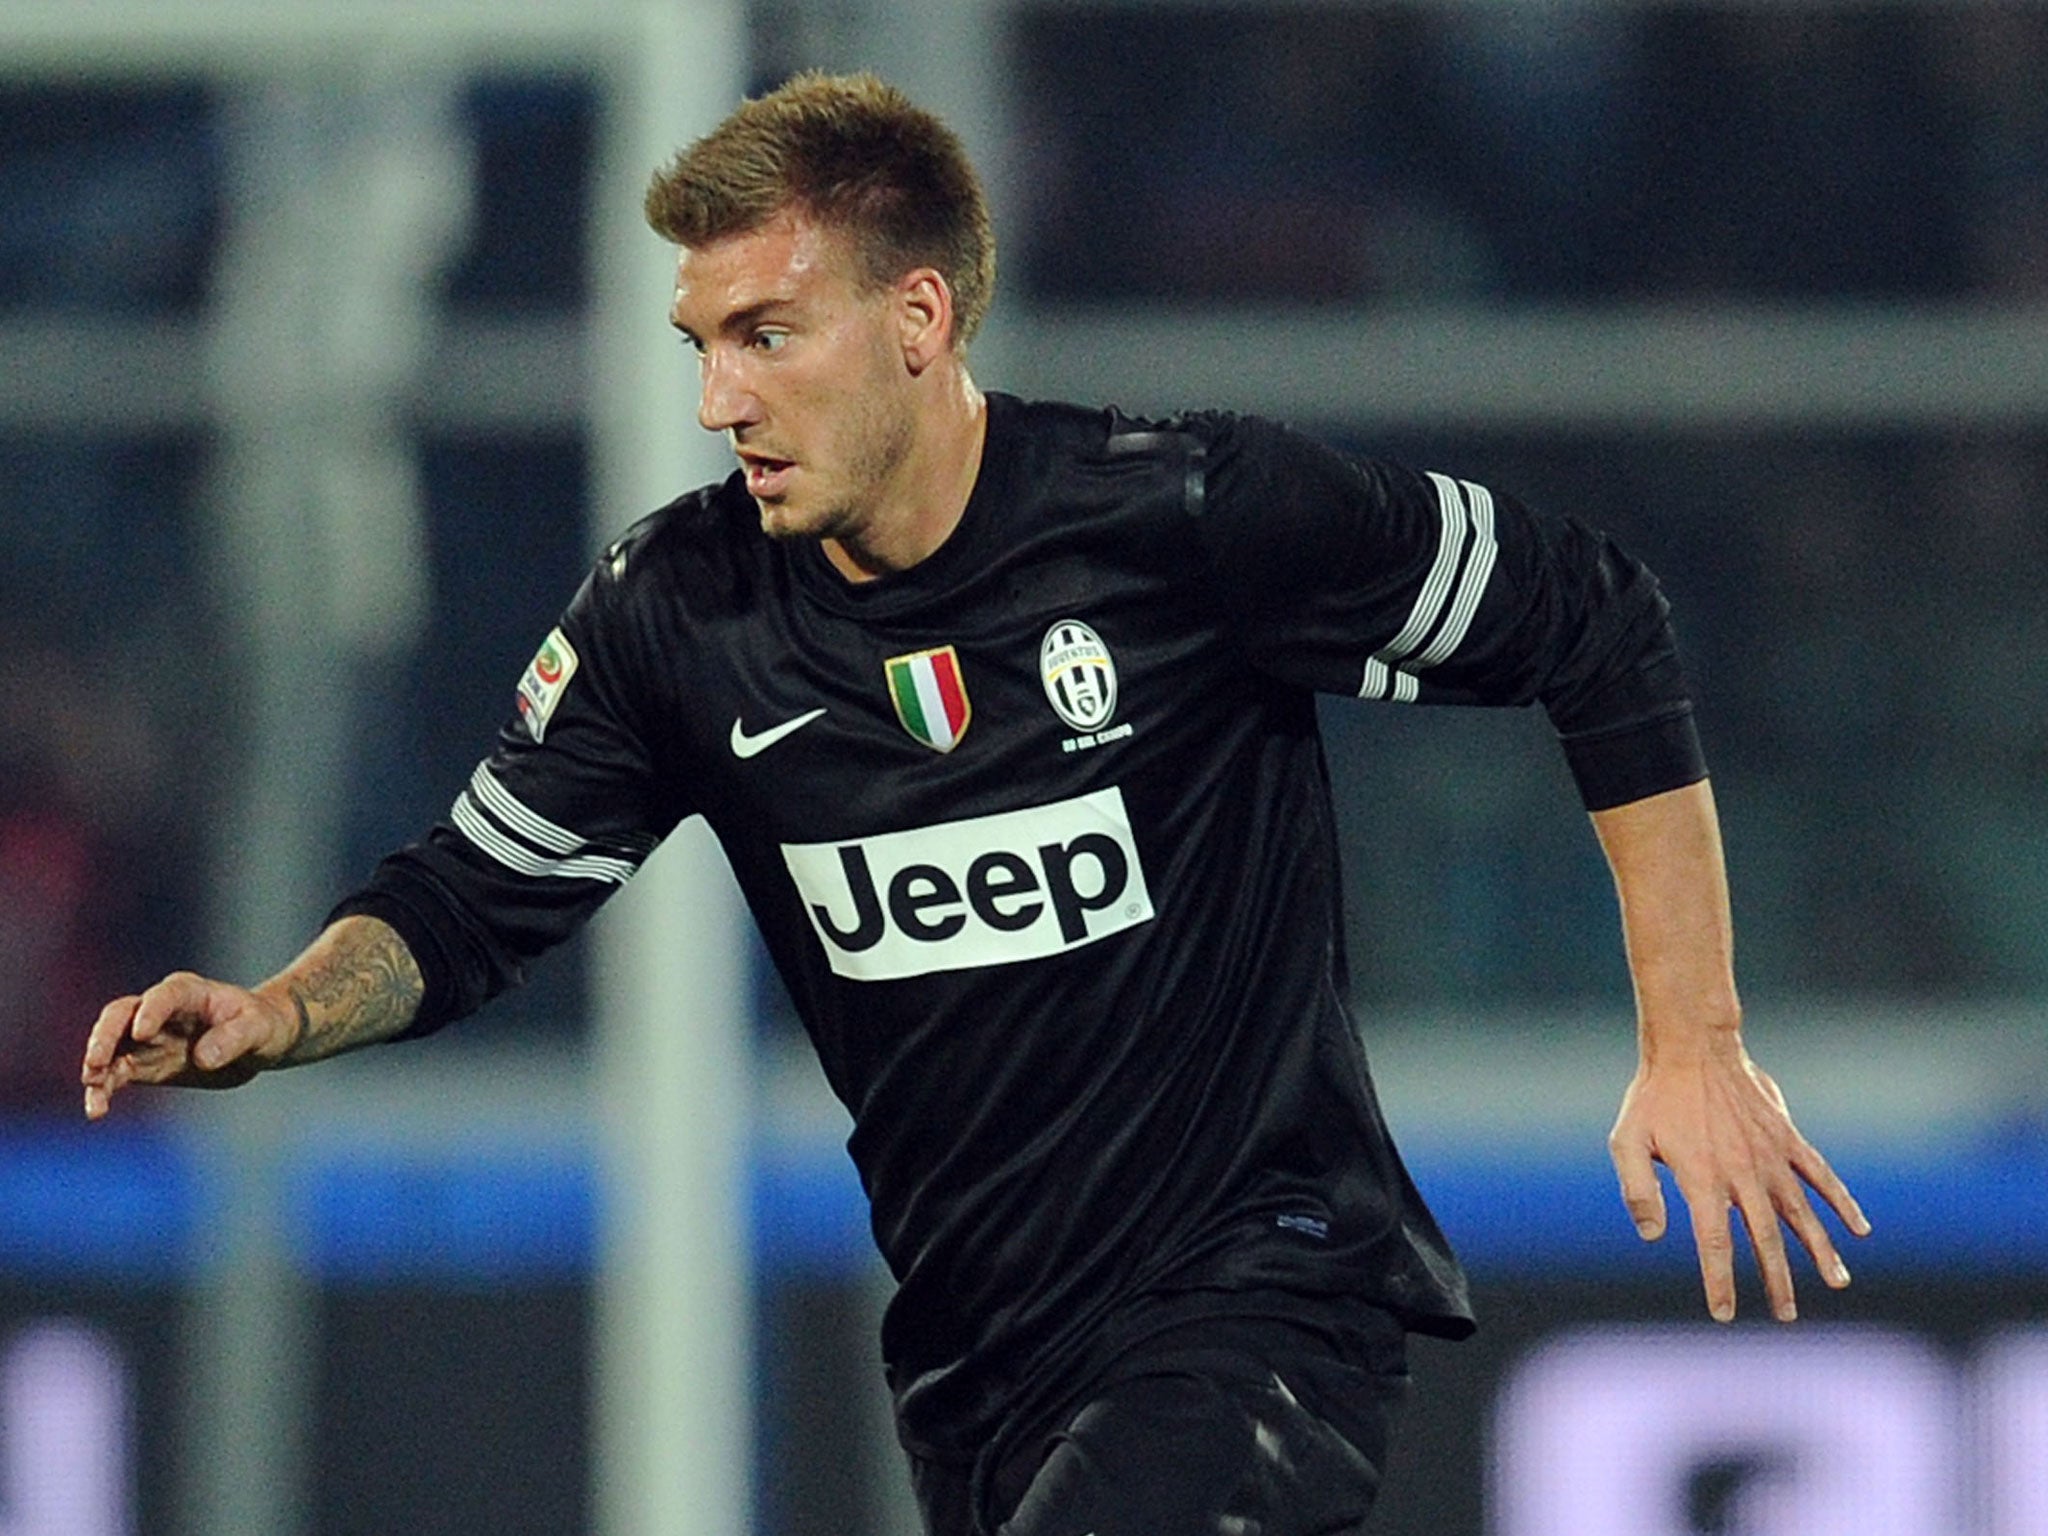 Nicklas Bendtner was on loan at Juventus last season